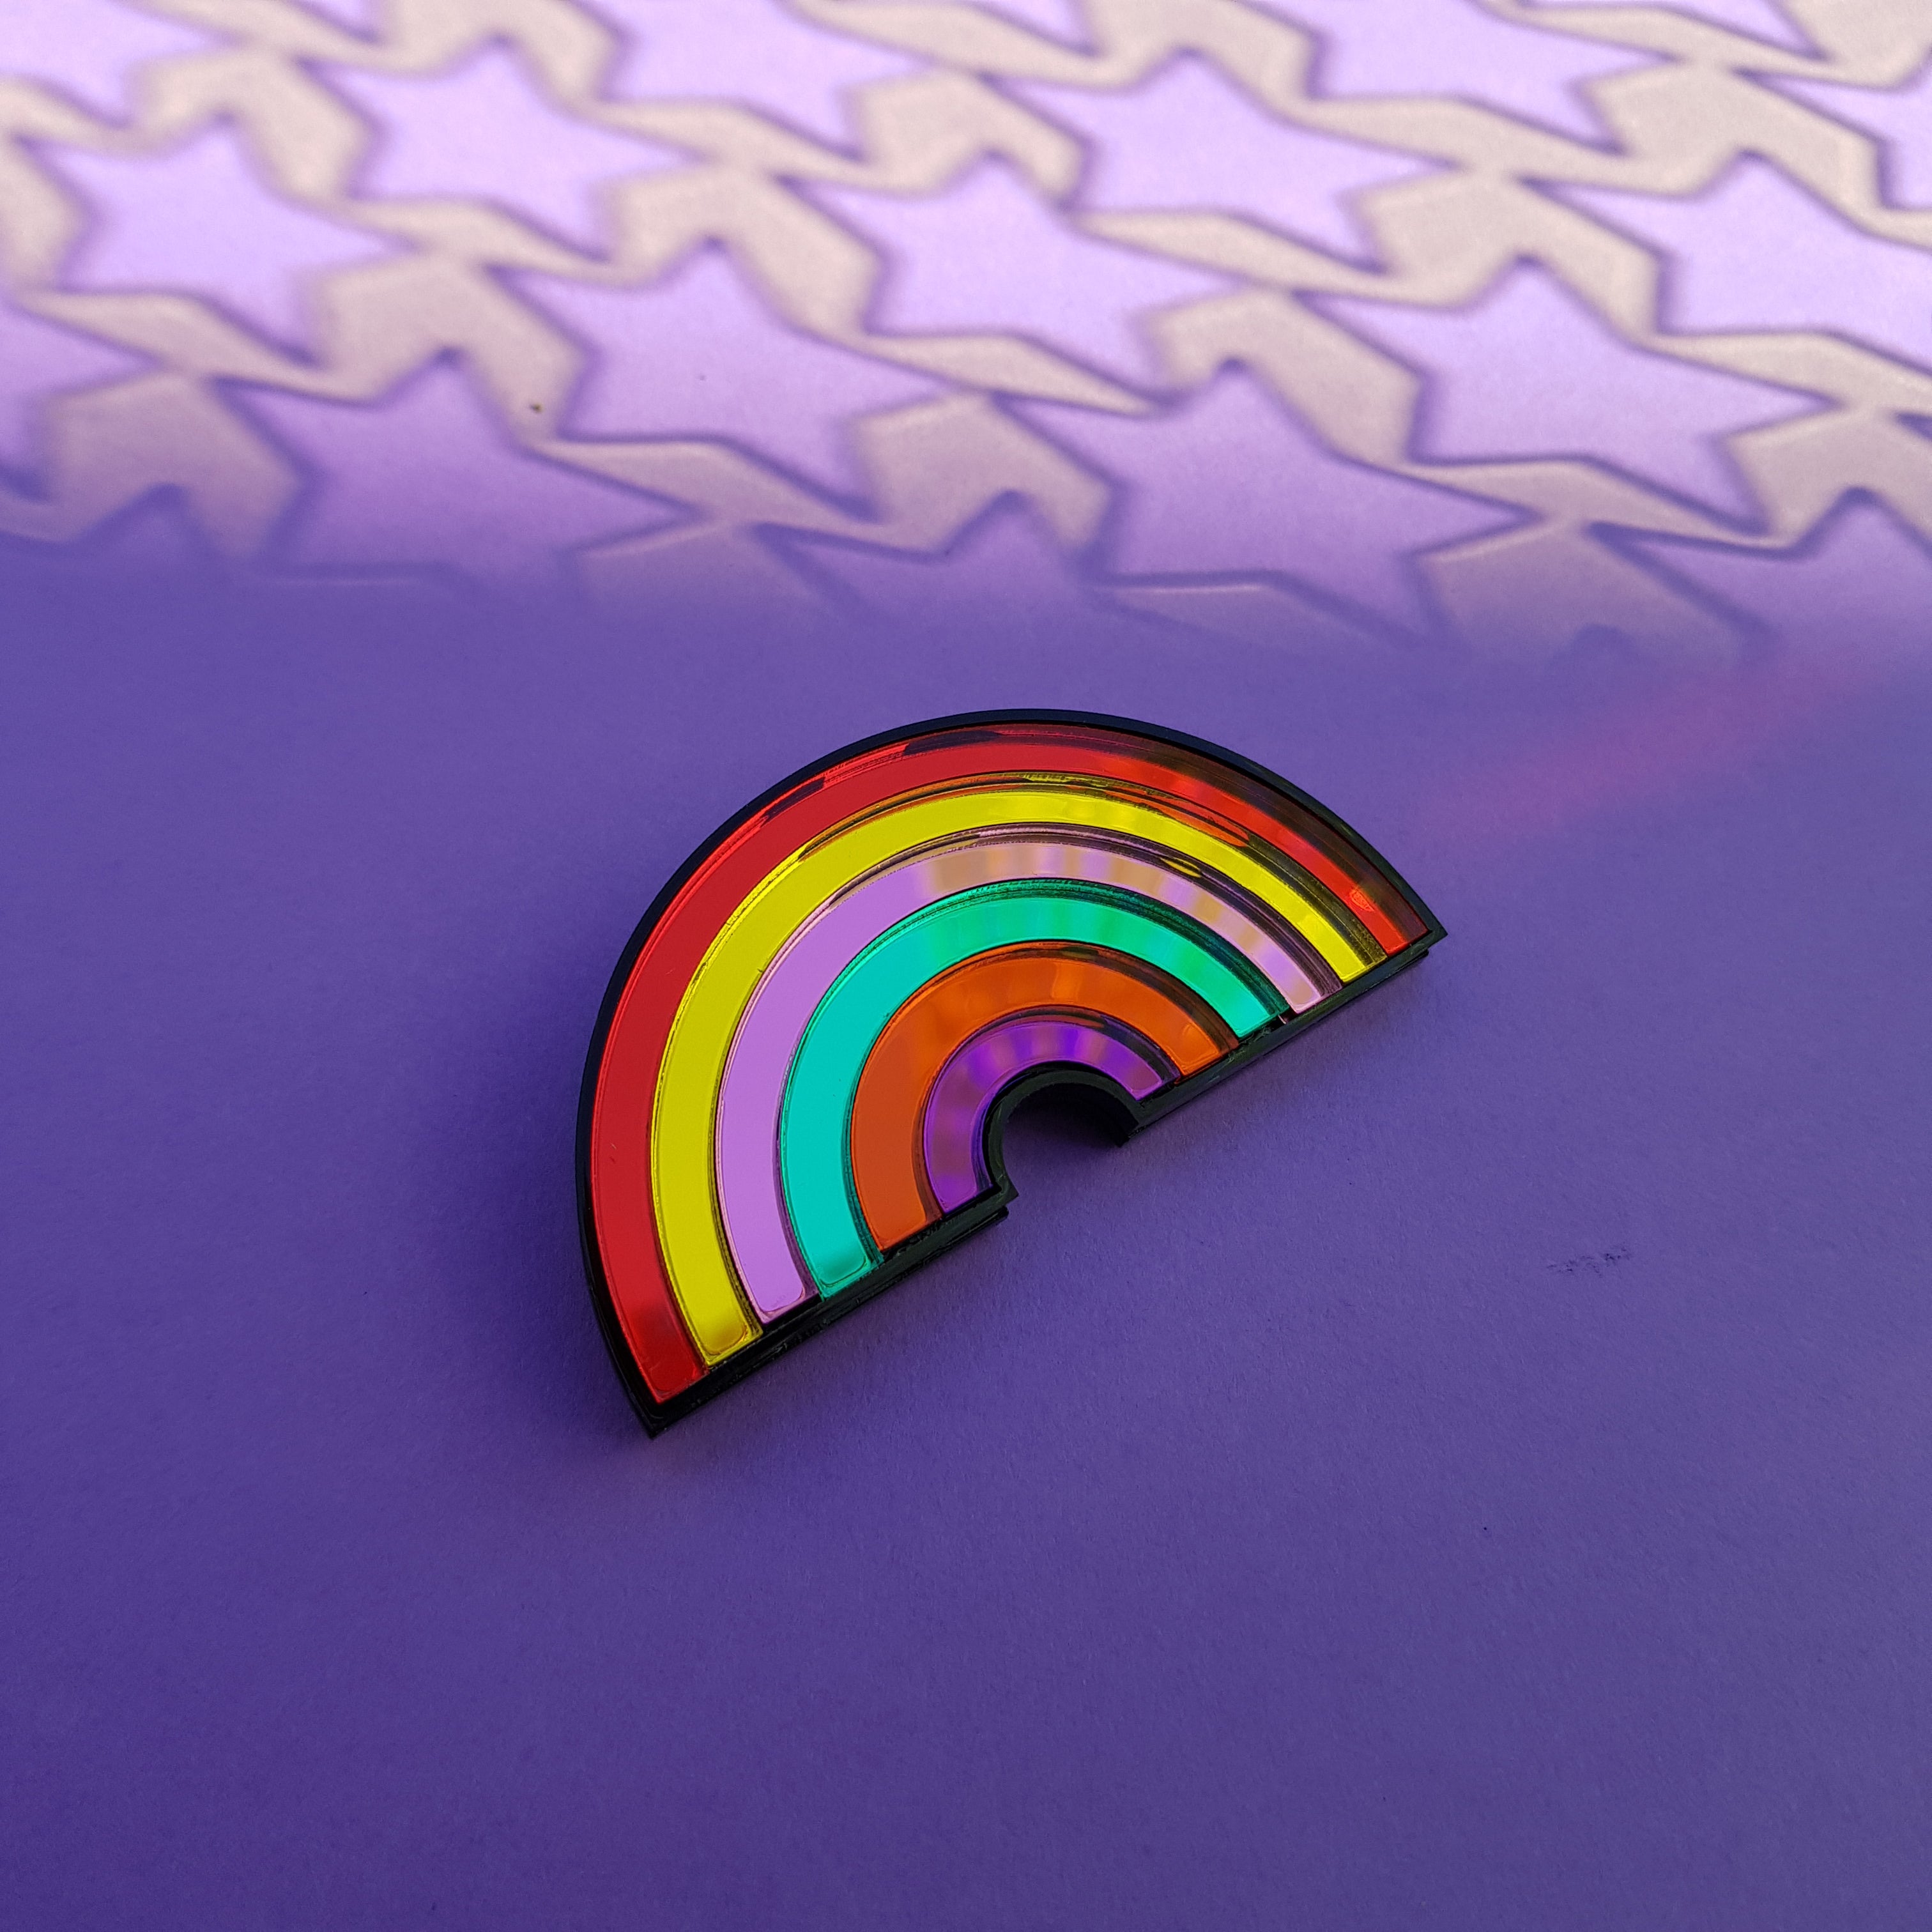 Rainbow brooch or hairclip